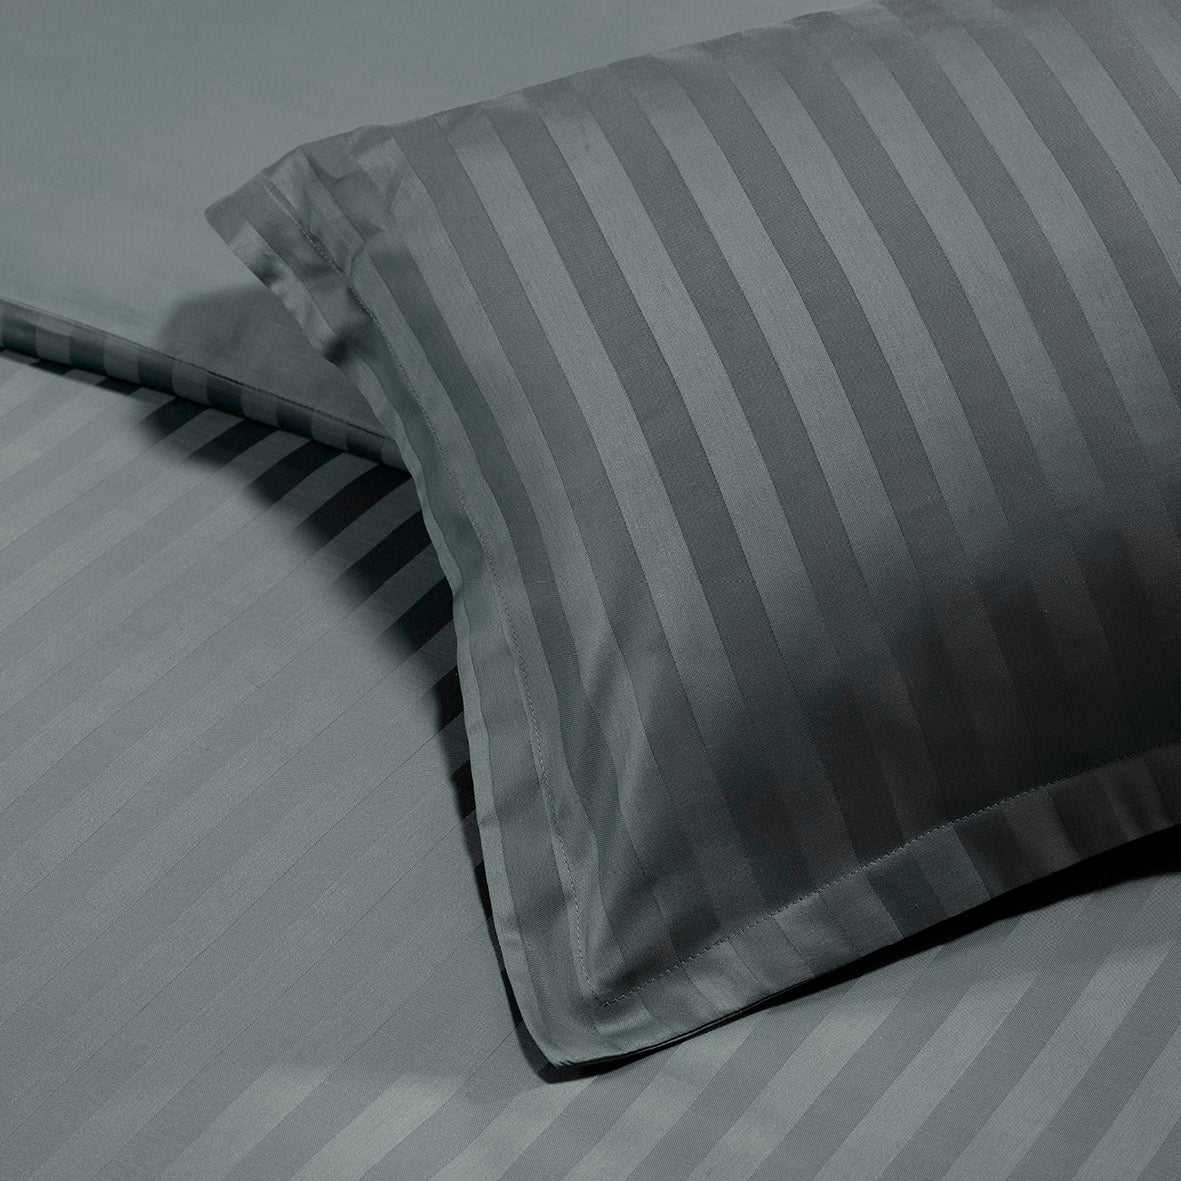 Pillowcase(s) cotton satin dobby stripe woven - Dark Grey